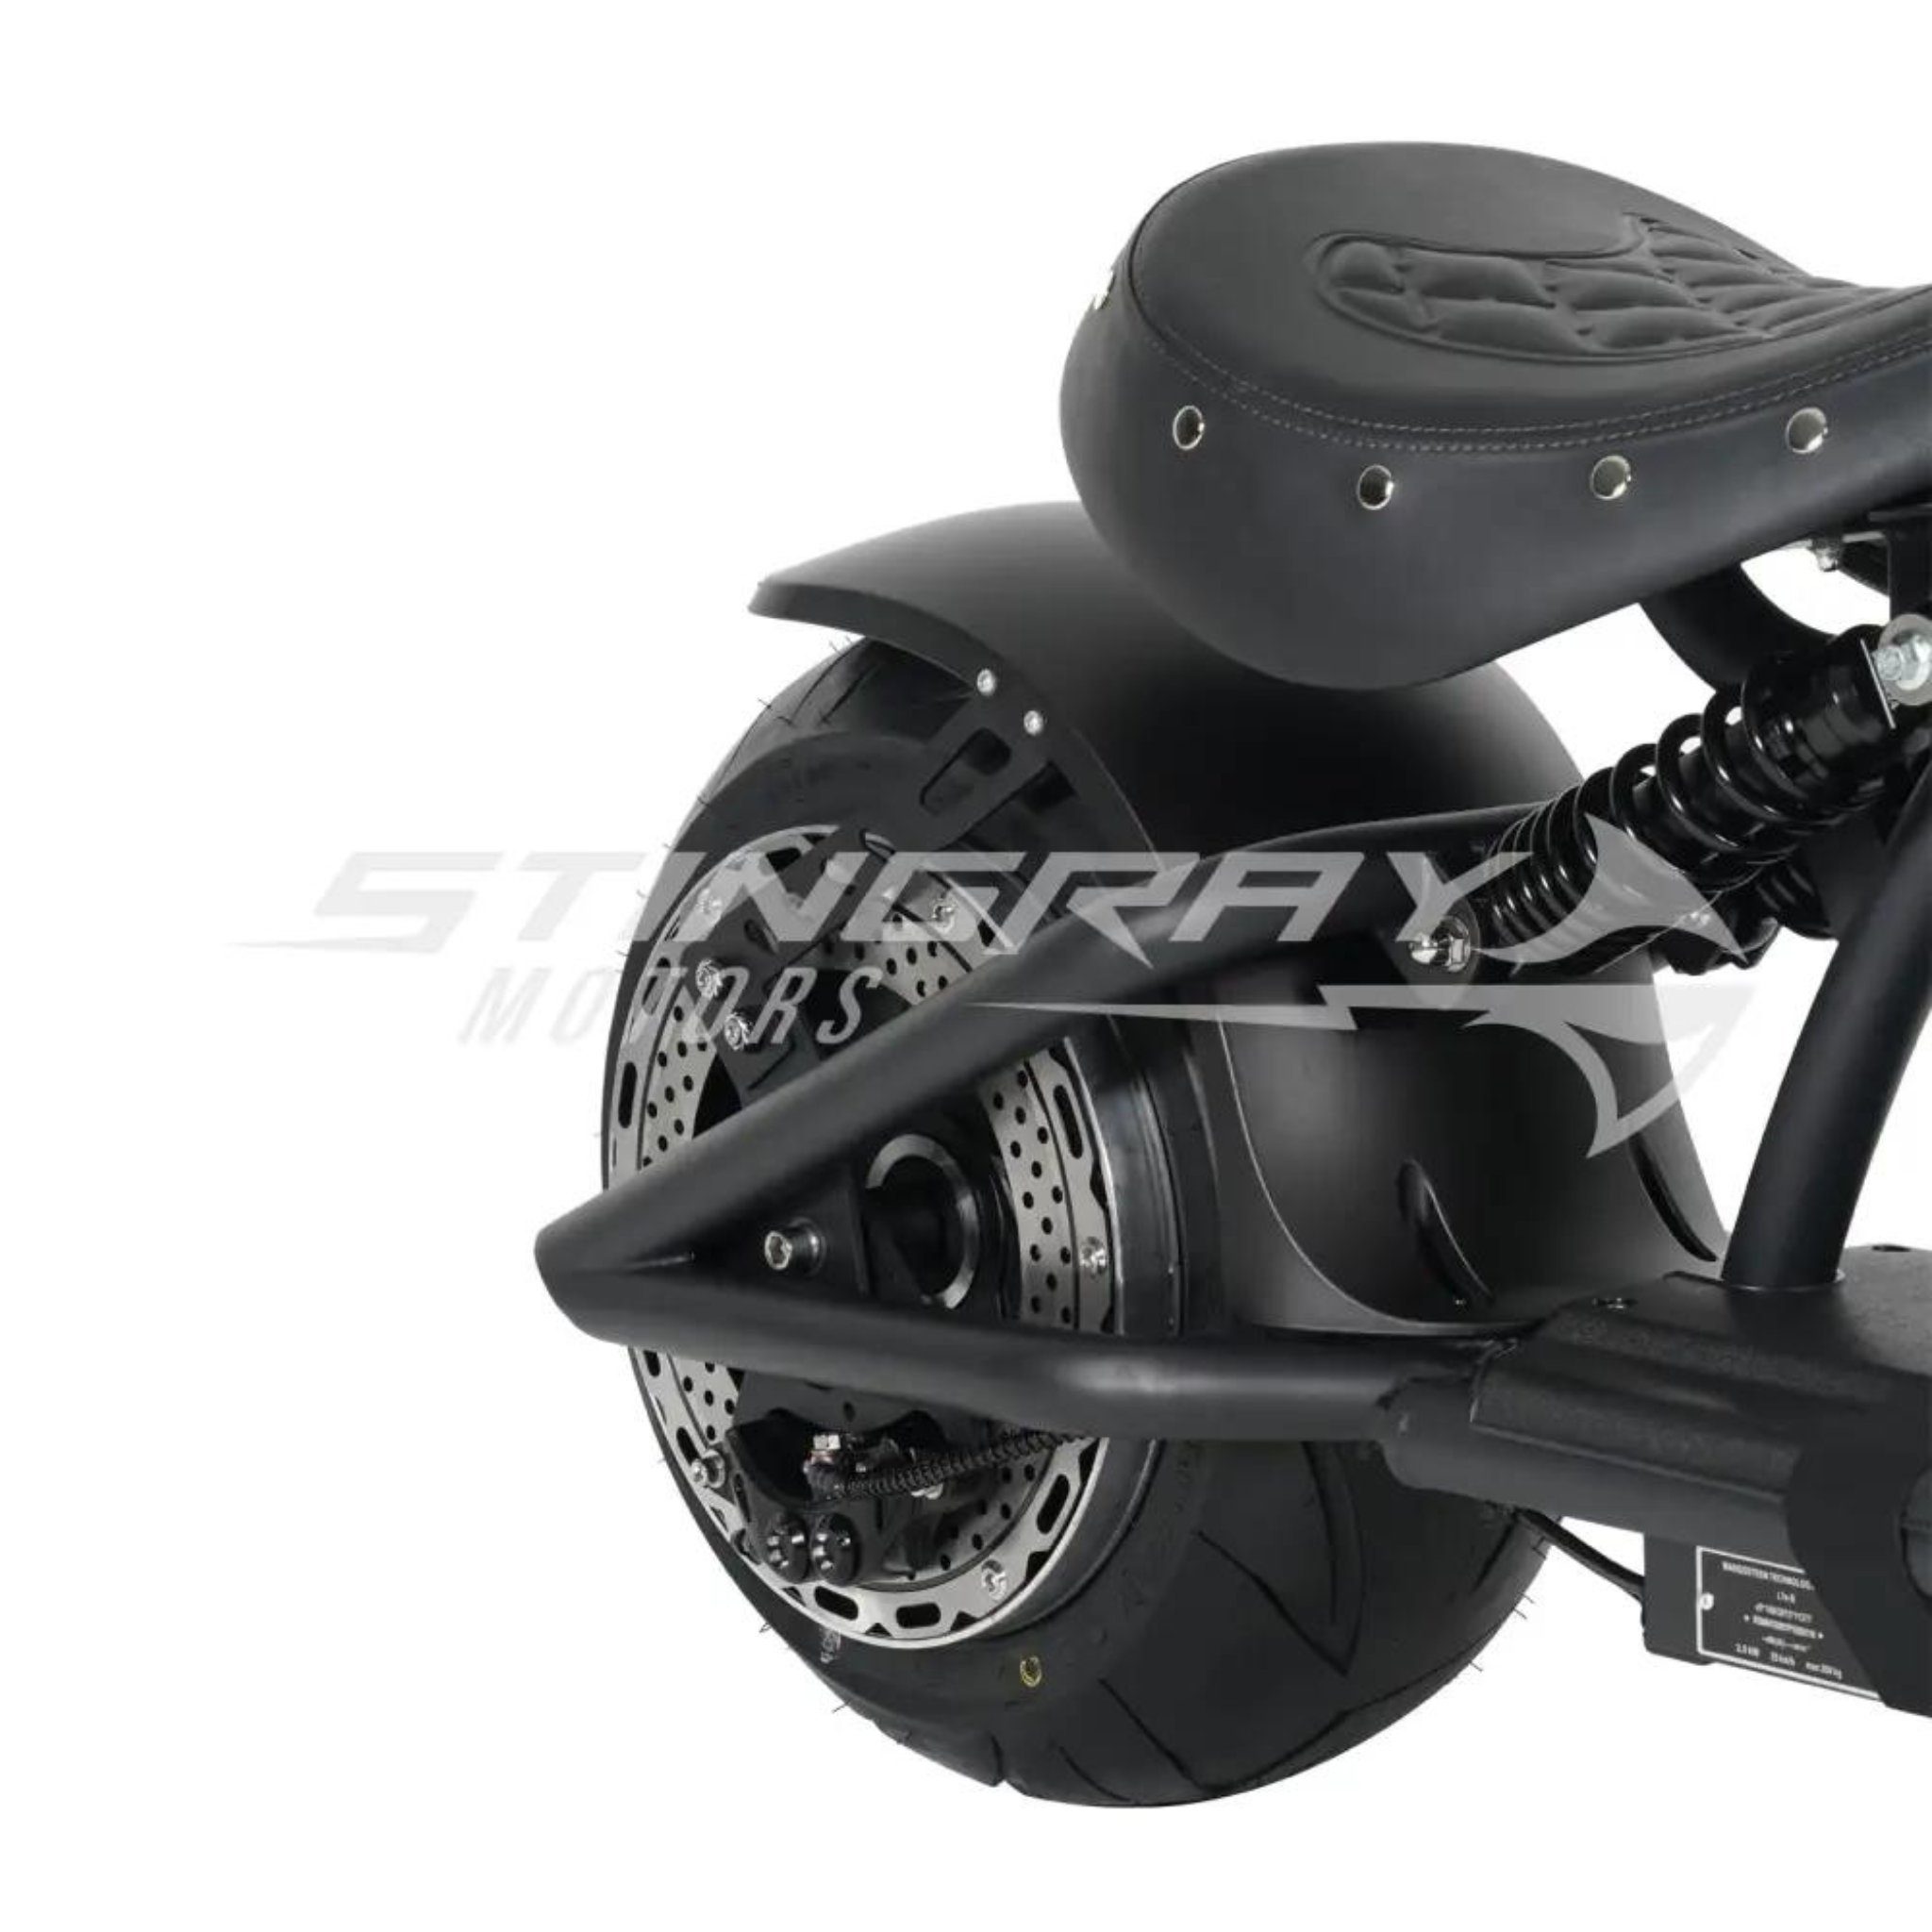 3kw km/h Motors - 3000,00 Stingray W, Custom E E-Motorroller 45 - Chopper Stingray Rot 30Ah M1P, Elektroroller - Harley